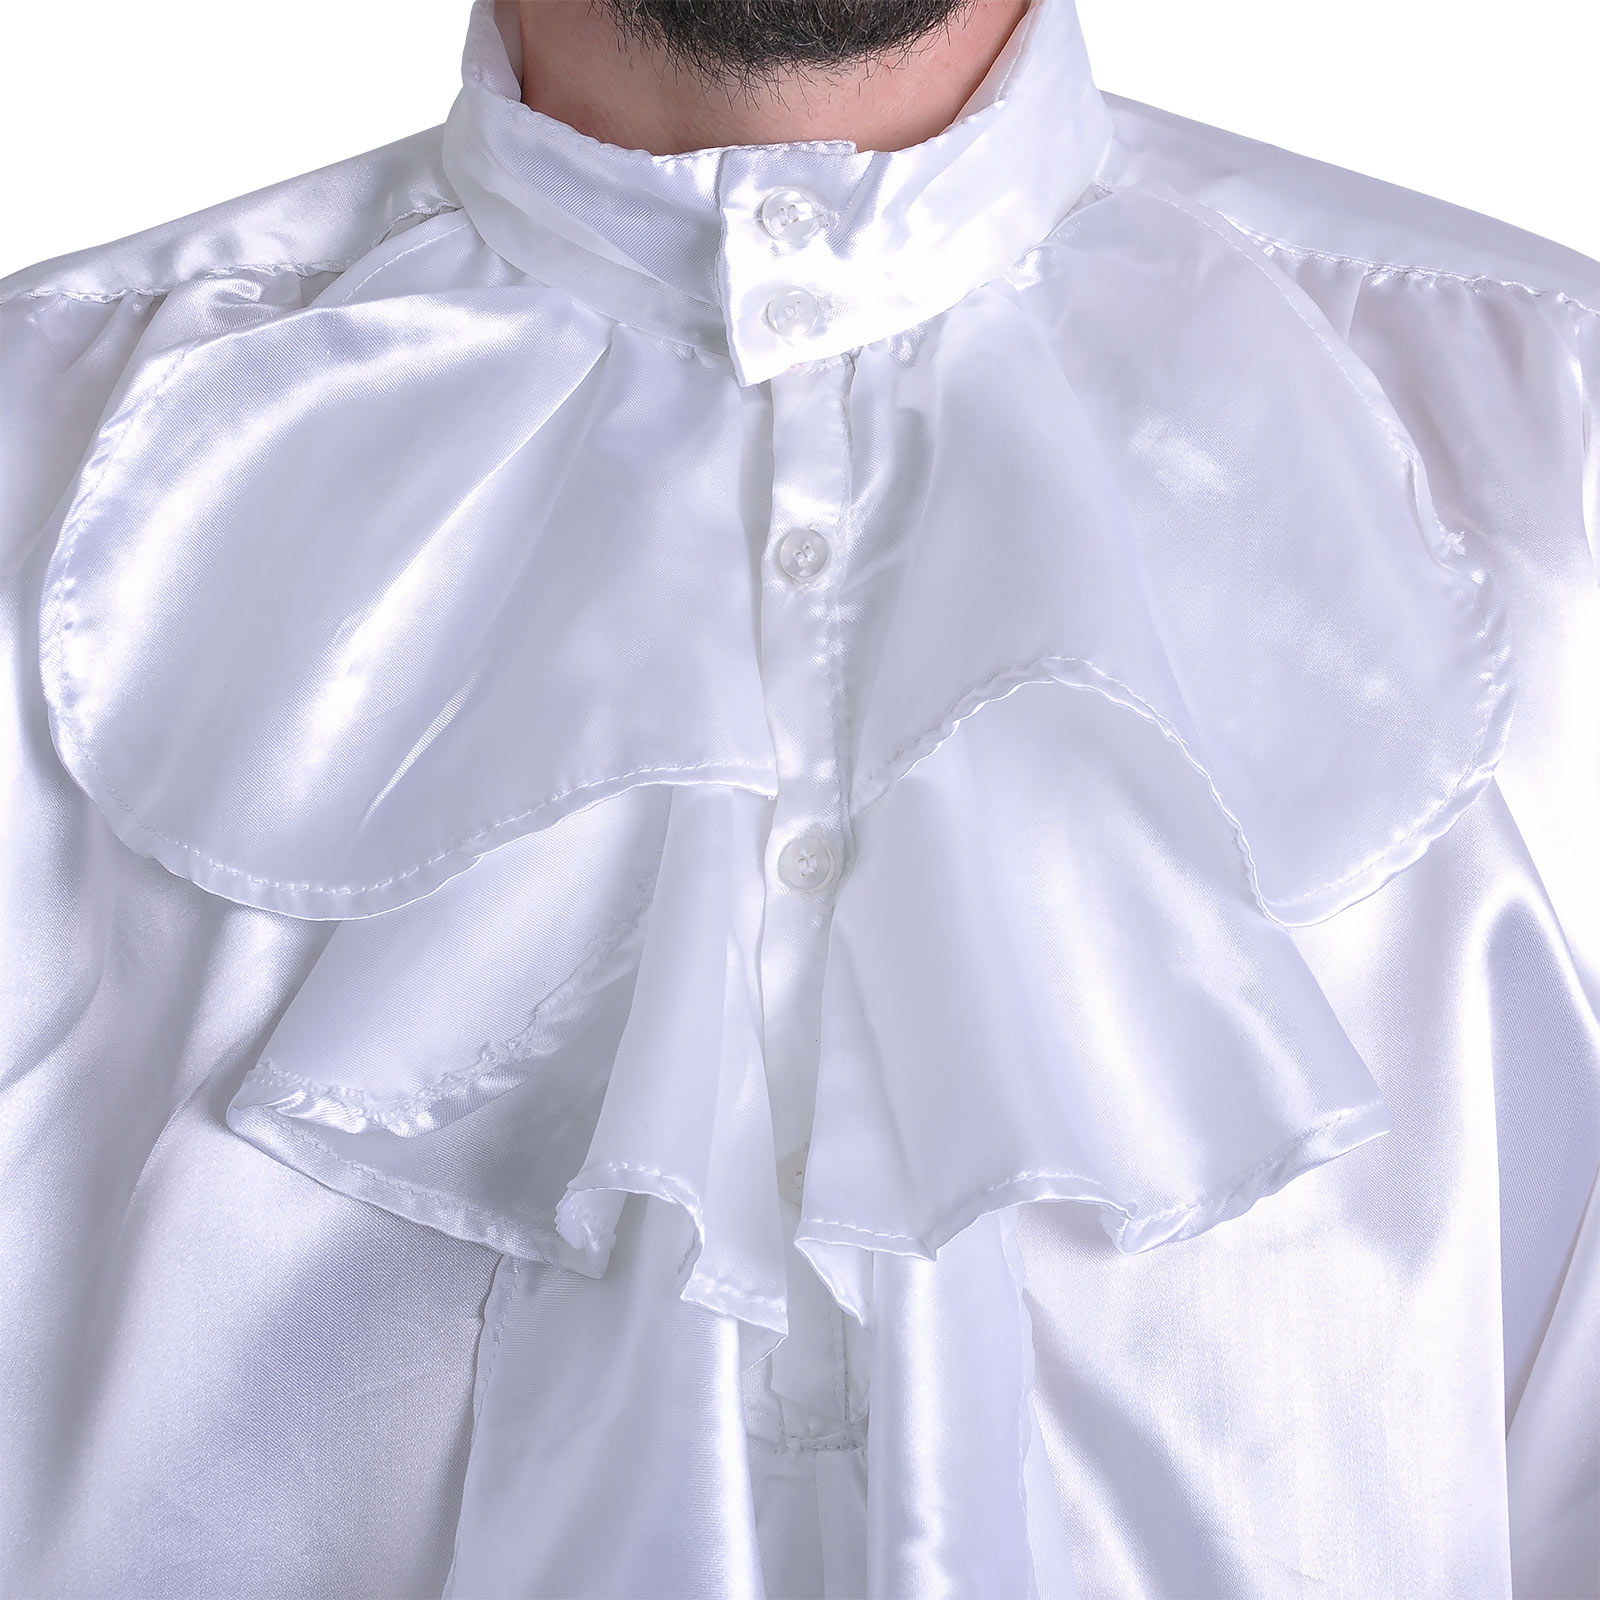 Satin Shirt with Ruffles White